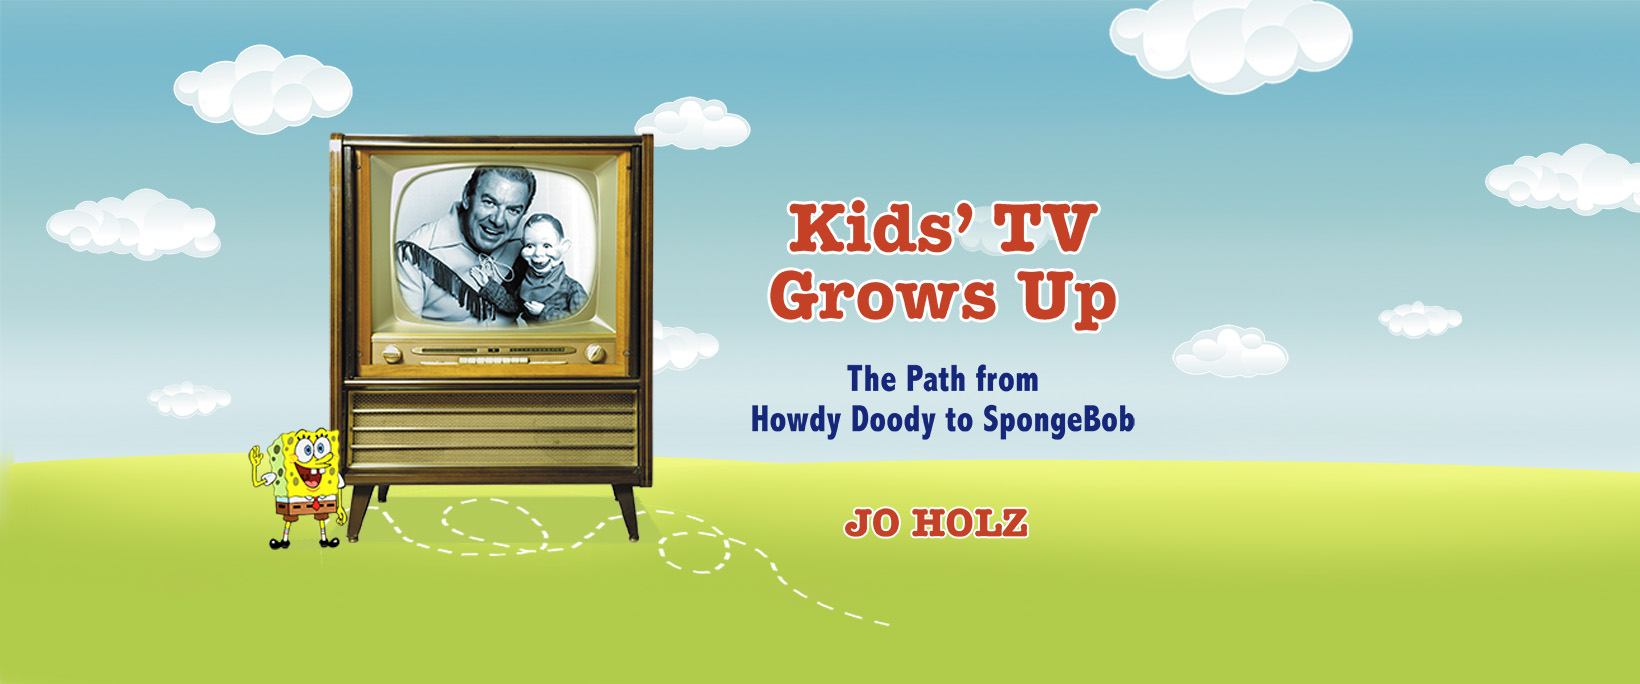 TVOKids Get Growing 1.6.1 Free Download